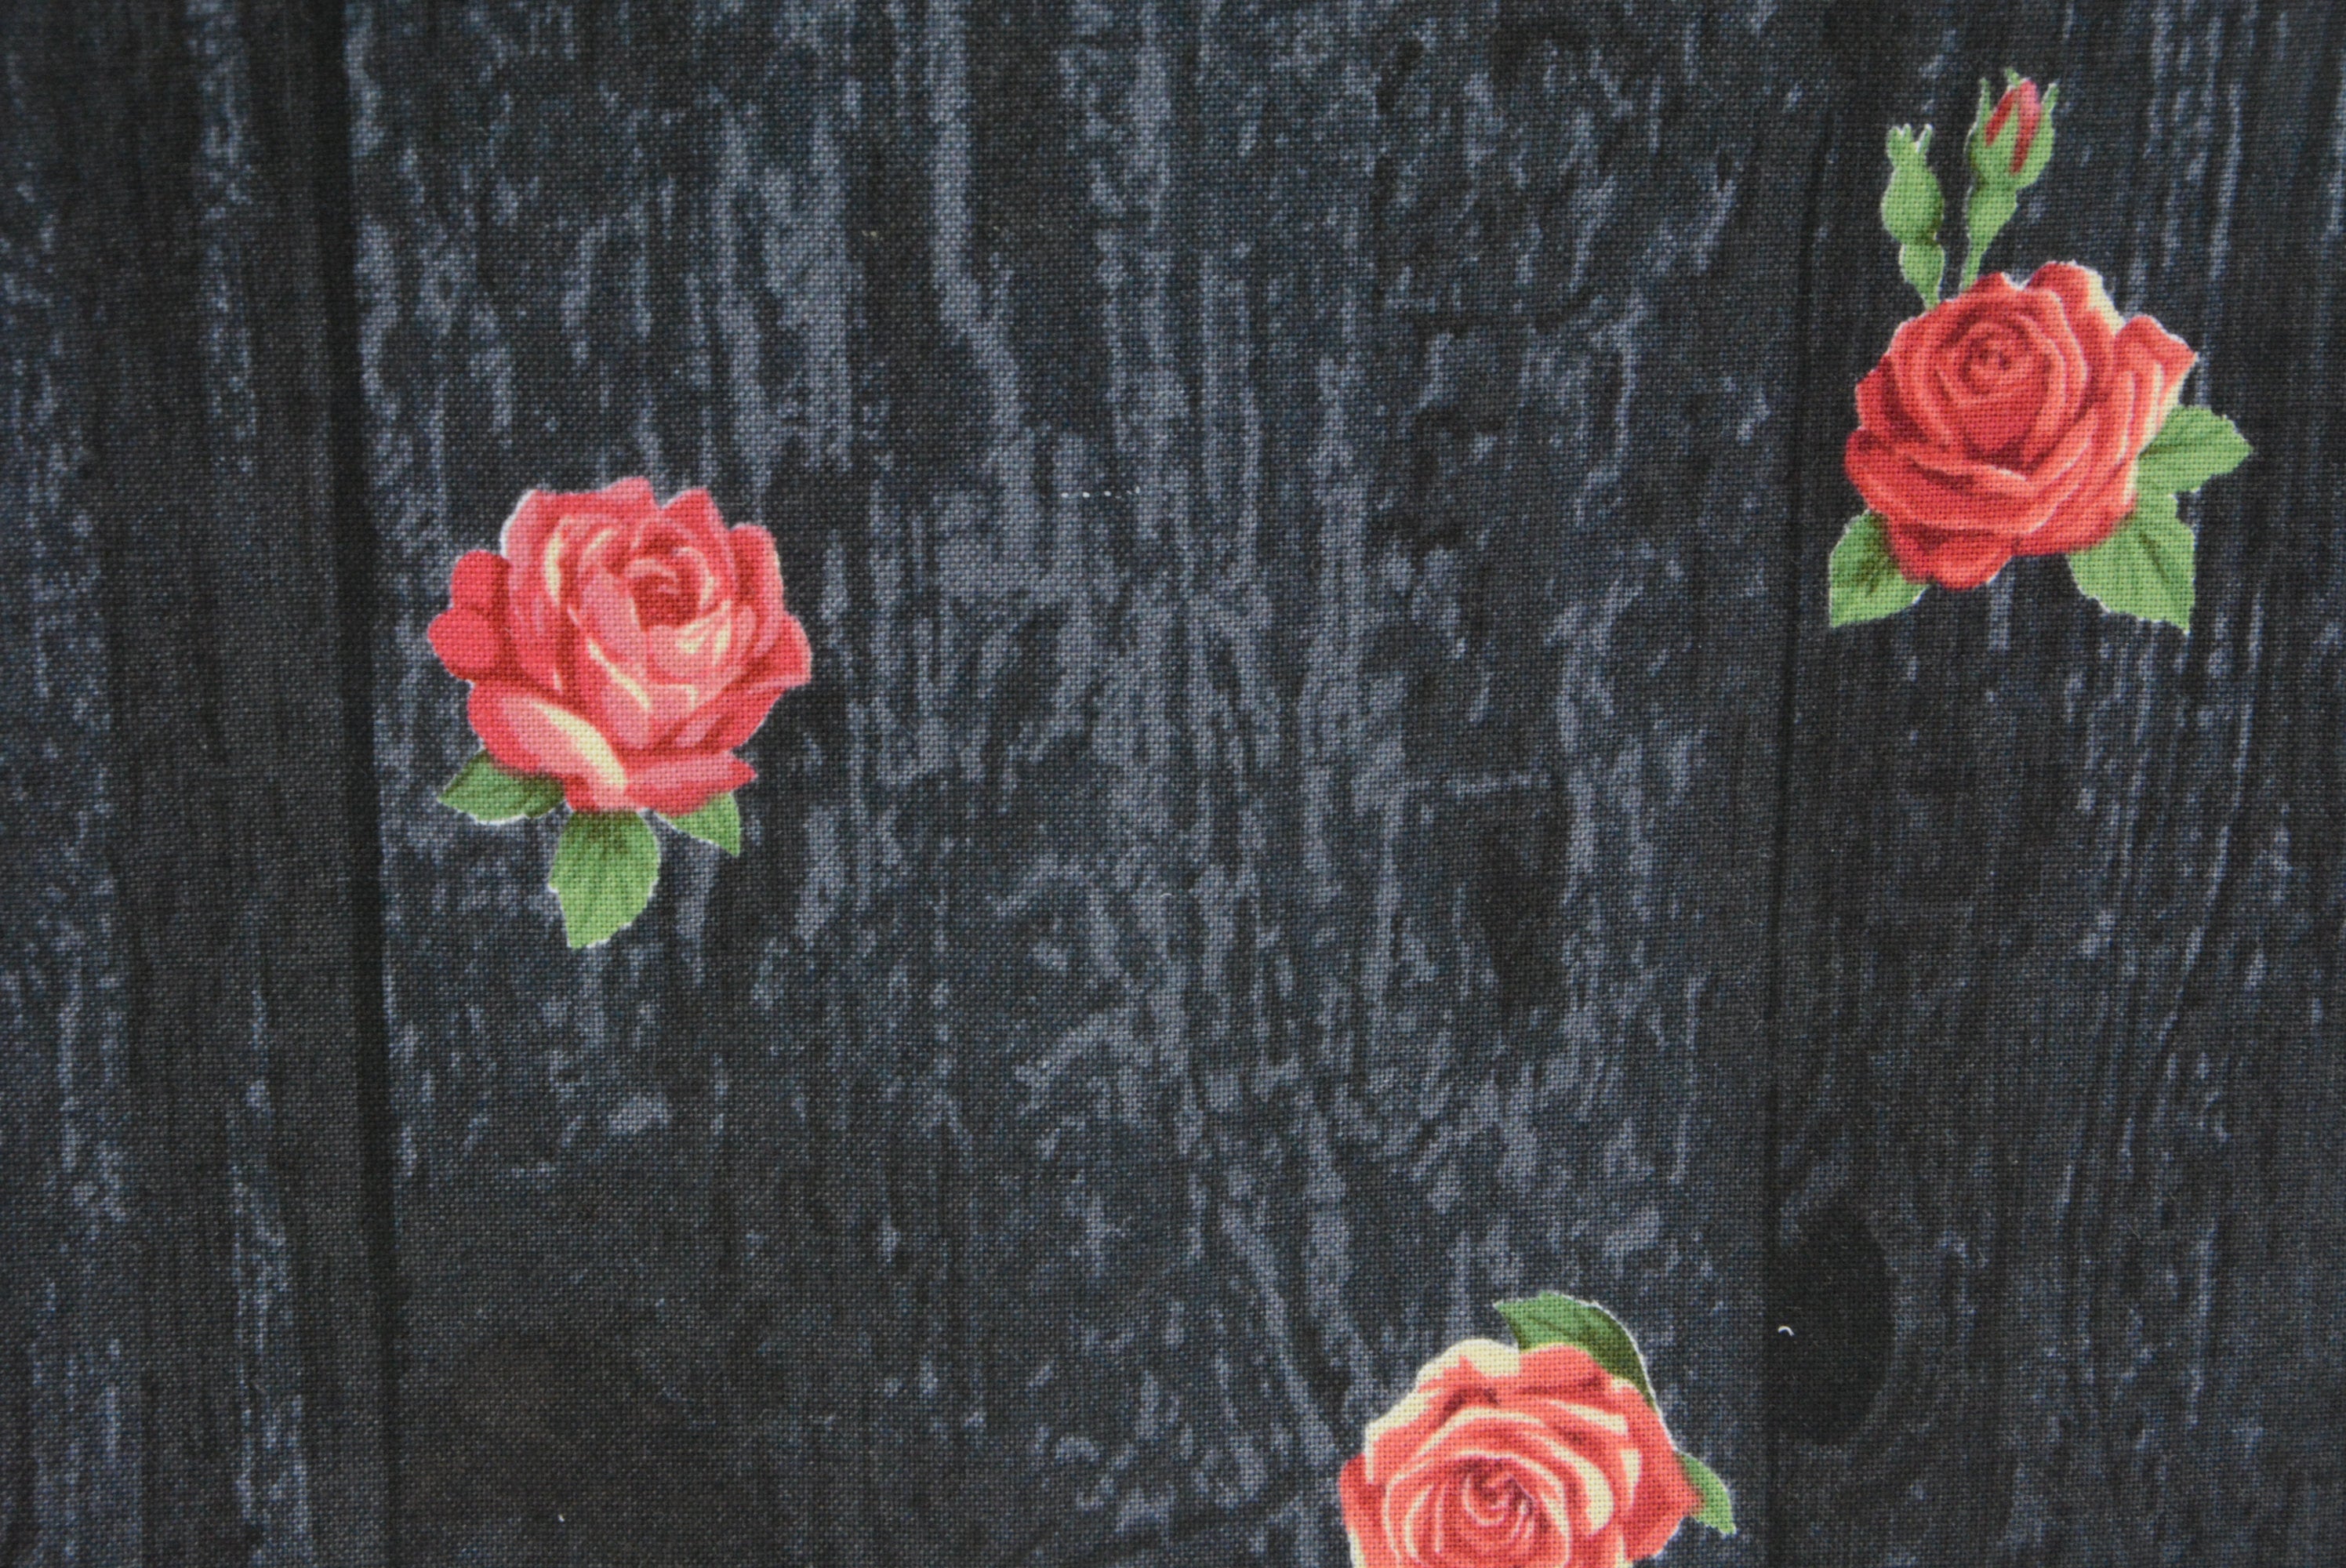 Roses on Woodgrain